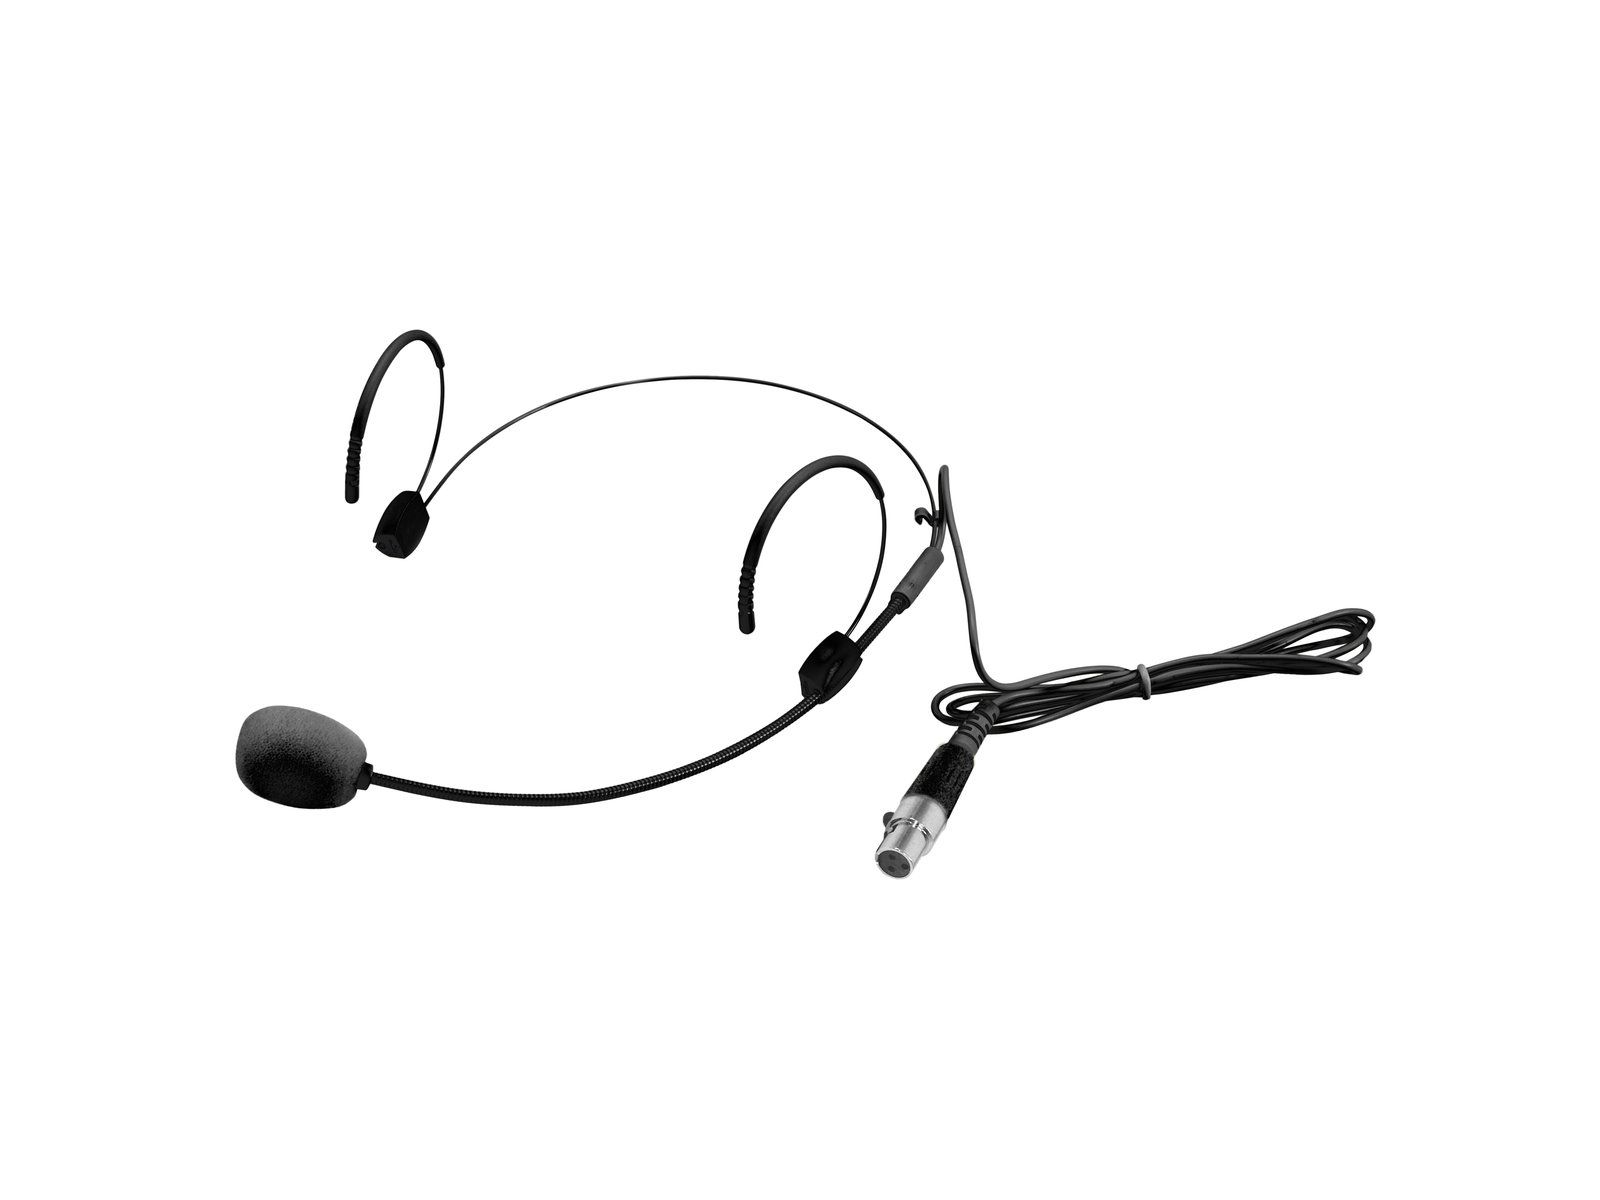 Omnitronic UHF 300 Headset